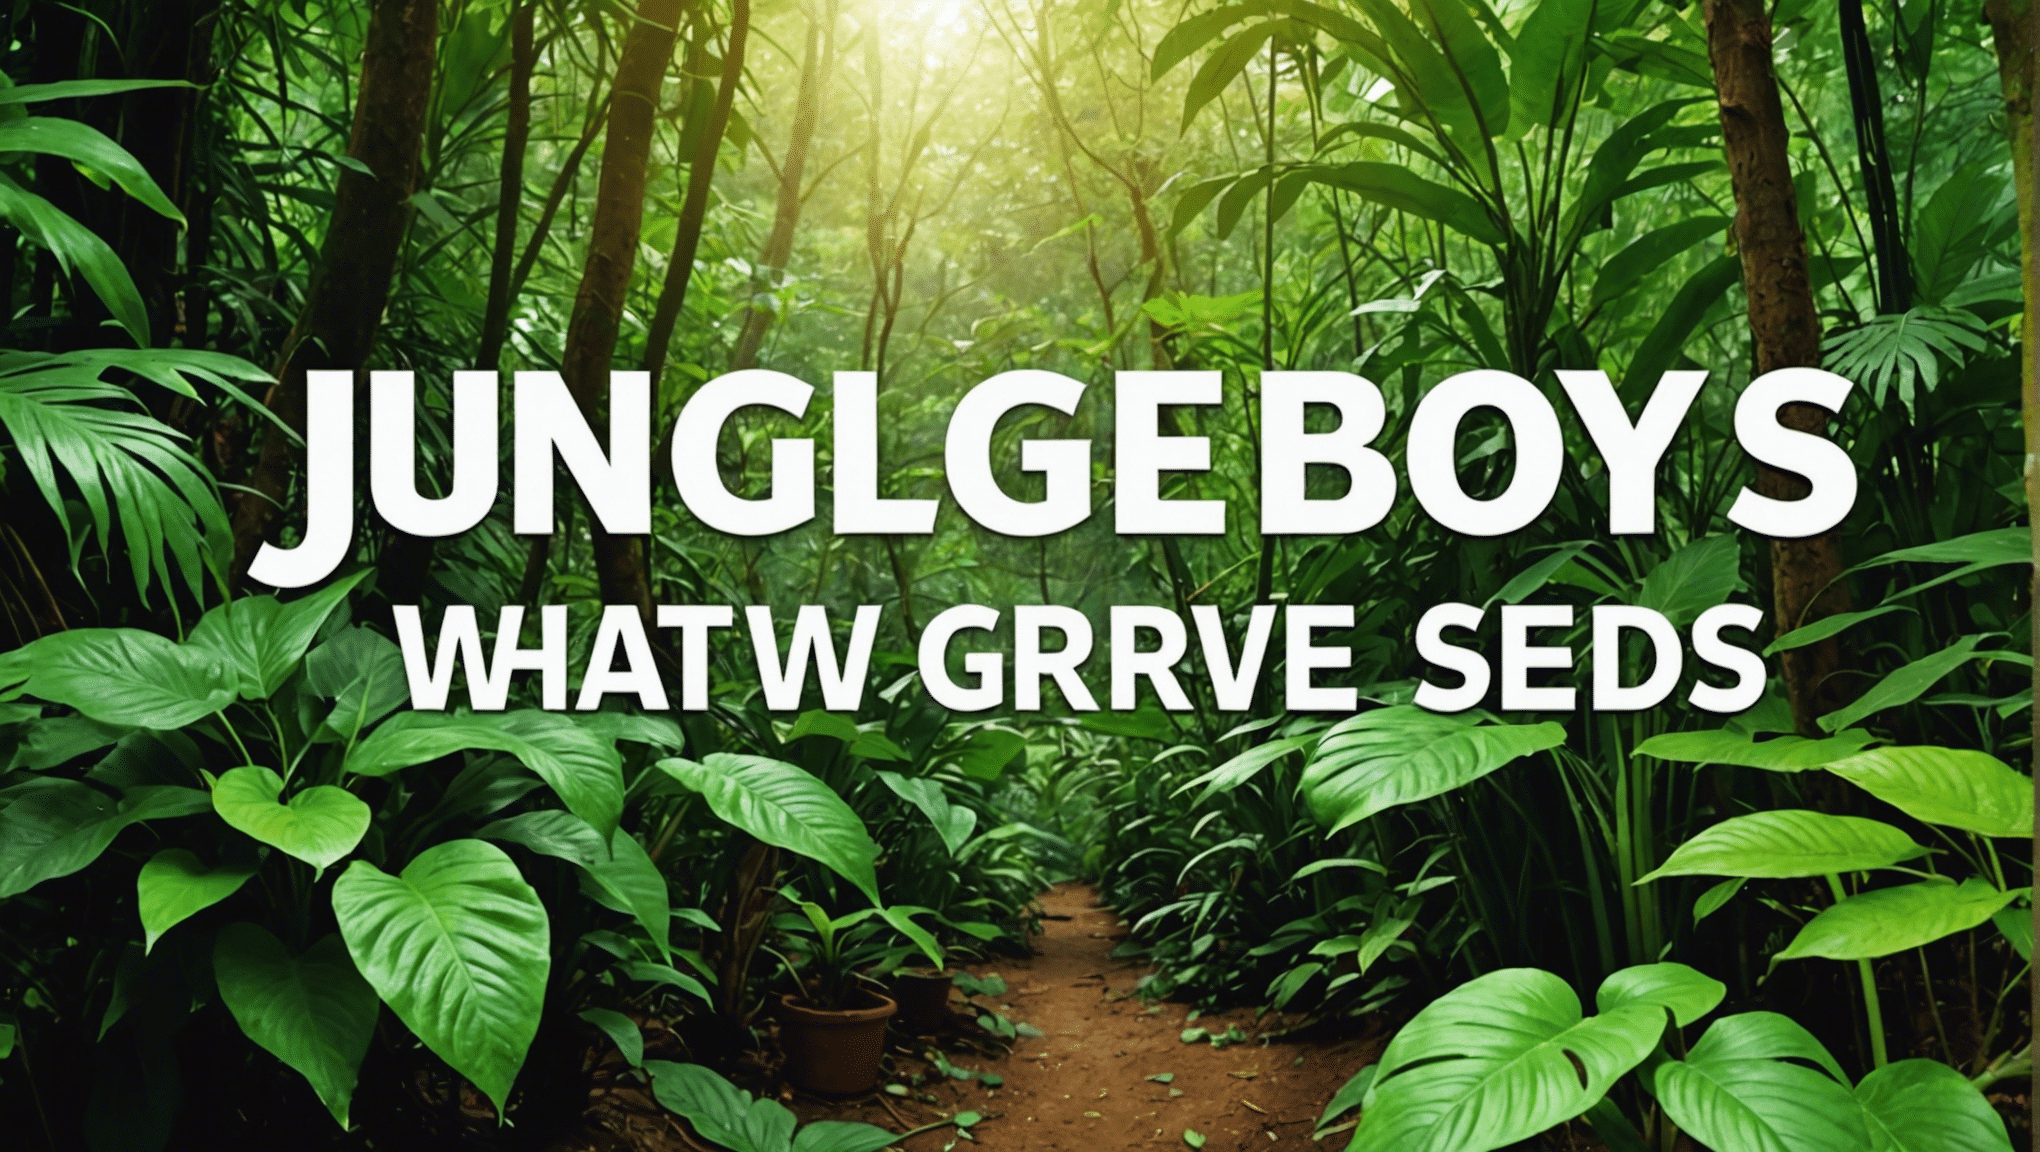 odkryj znaczenie nasion chłopców z dżungli i proces ich wzrostu w tym obszernym przewodniku. poznaj unikalne cechy i techniki uprawy nasion chłopców z dżungli.